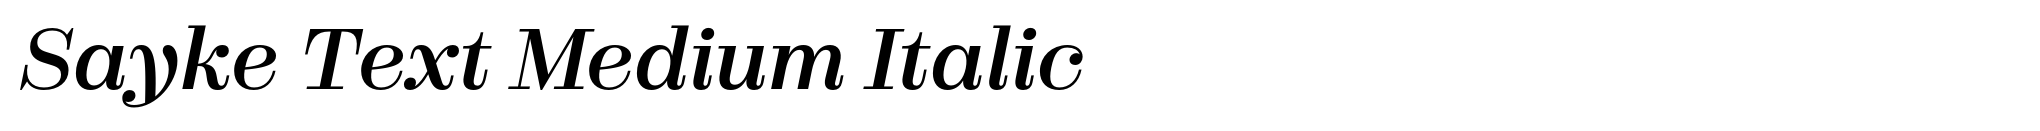 Sayke Text Medium Italic image